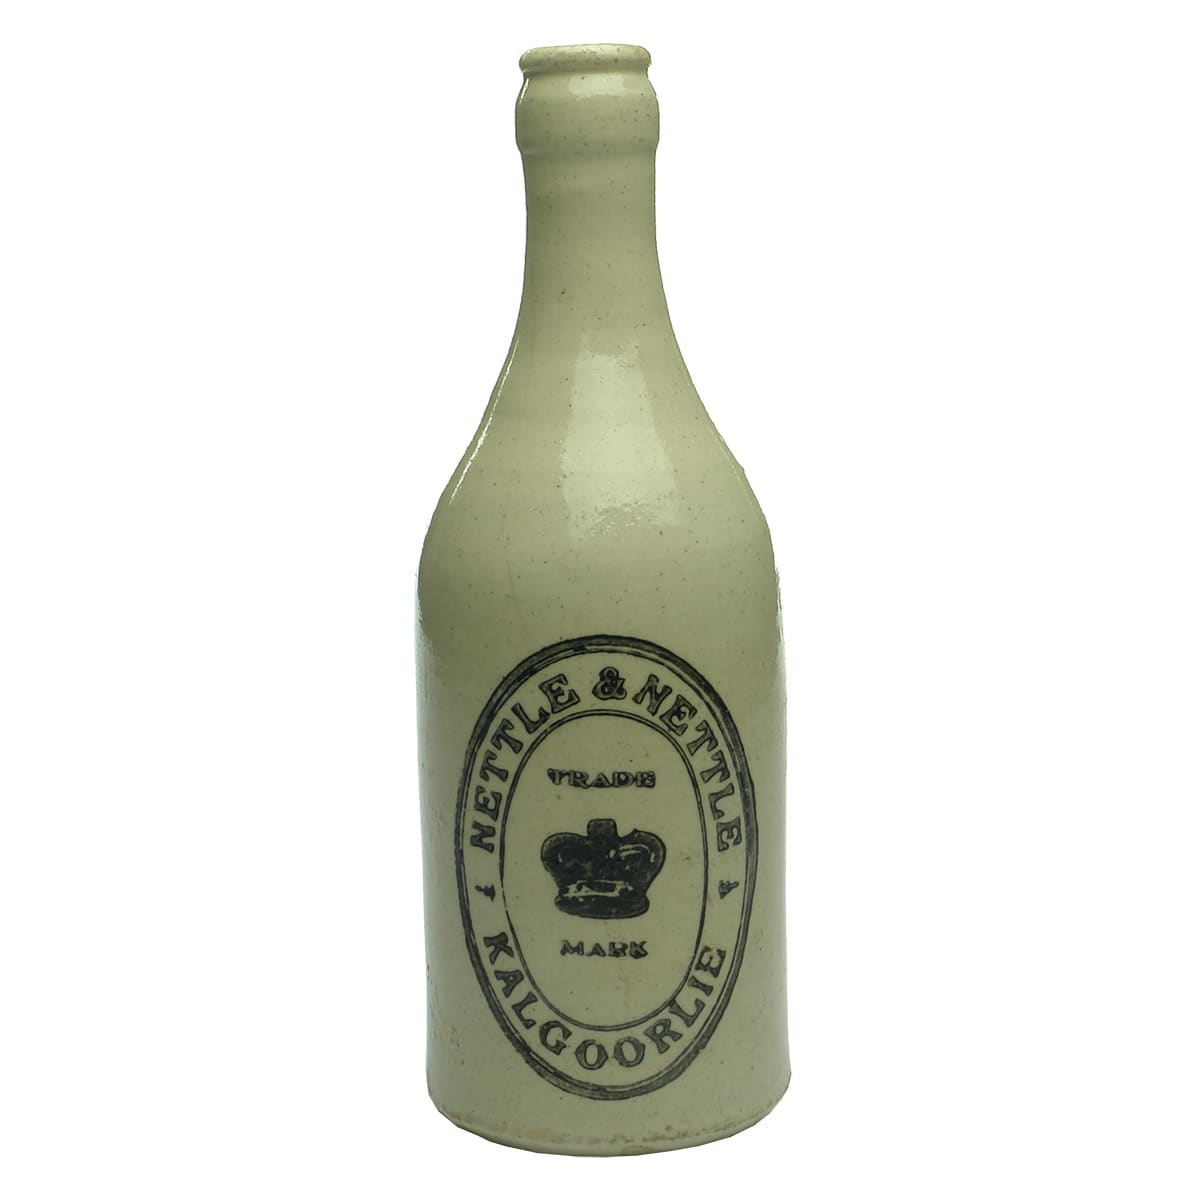 Ginger Beer. Nettle & Nettle, Kalgoorlie. Champagne. Crown Seal. All White.